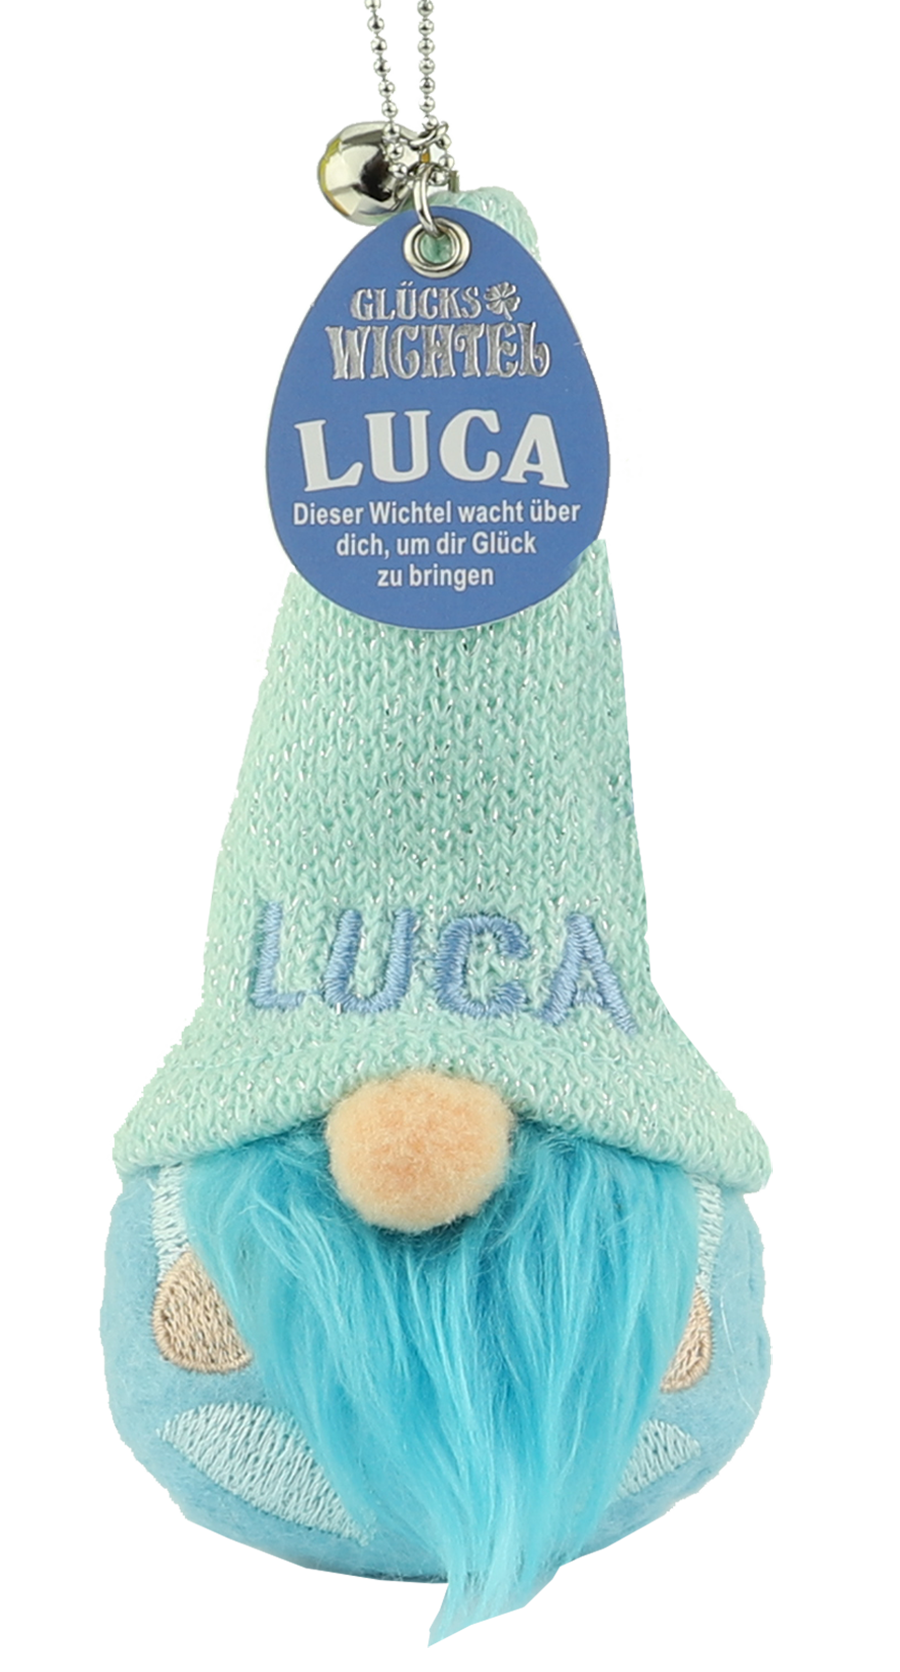 H & H Glückswichtel - Luca